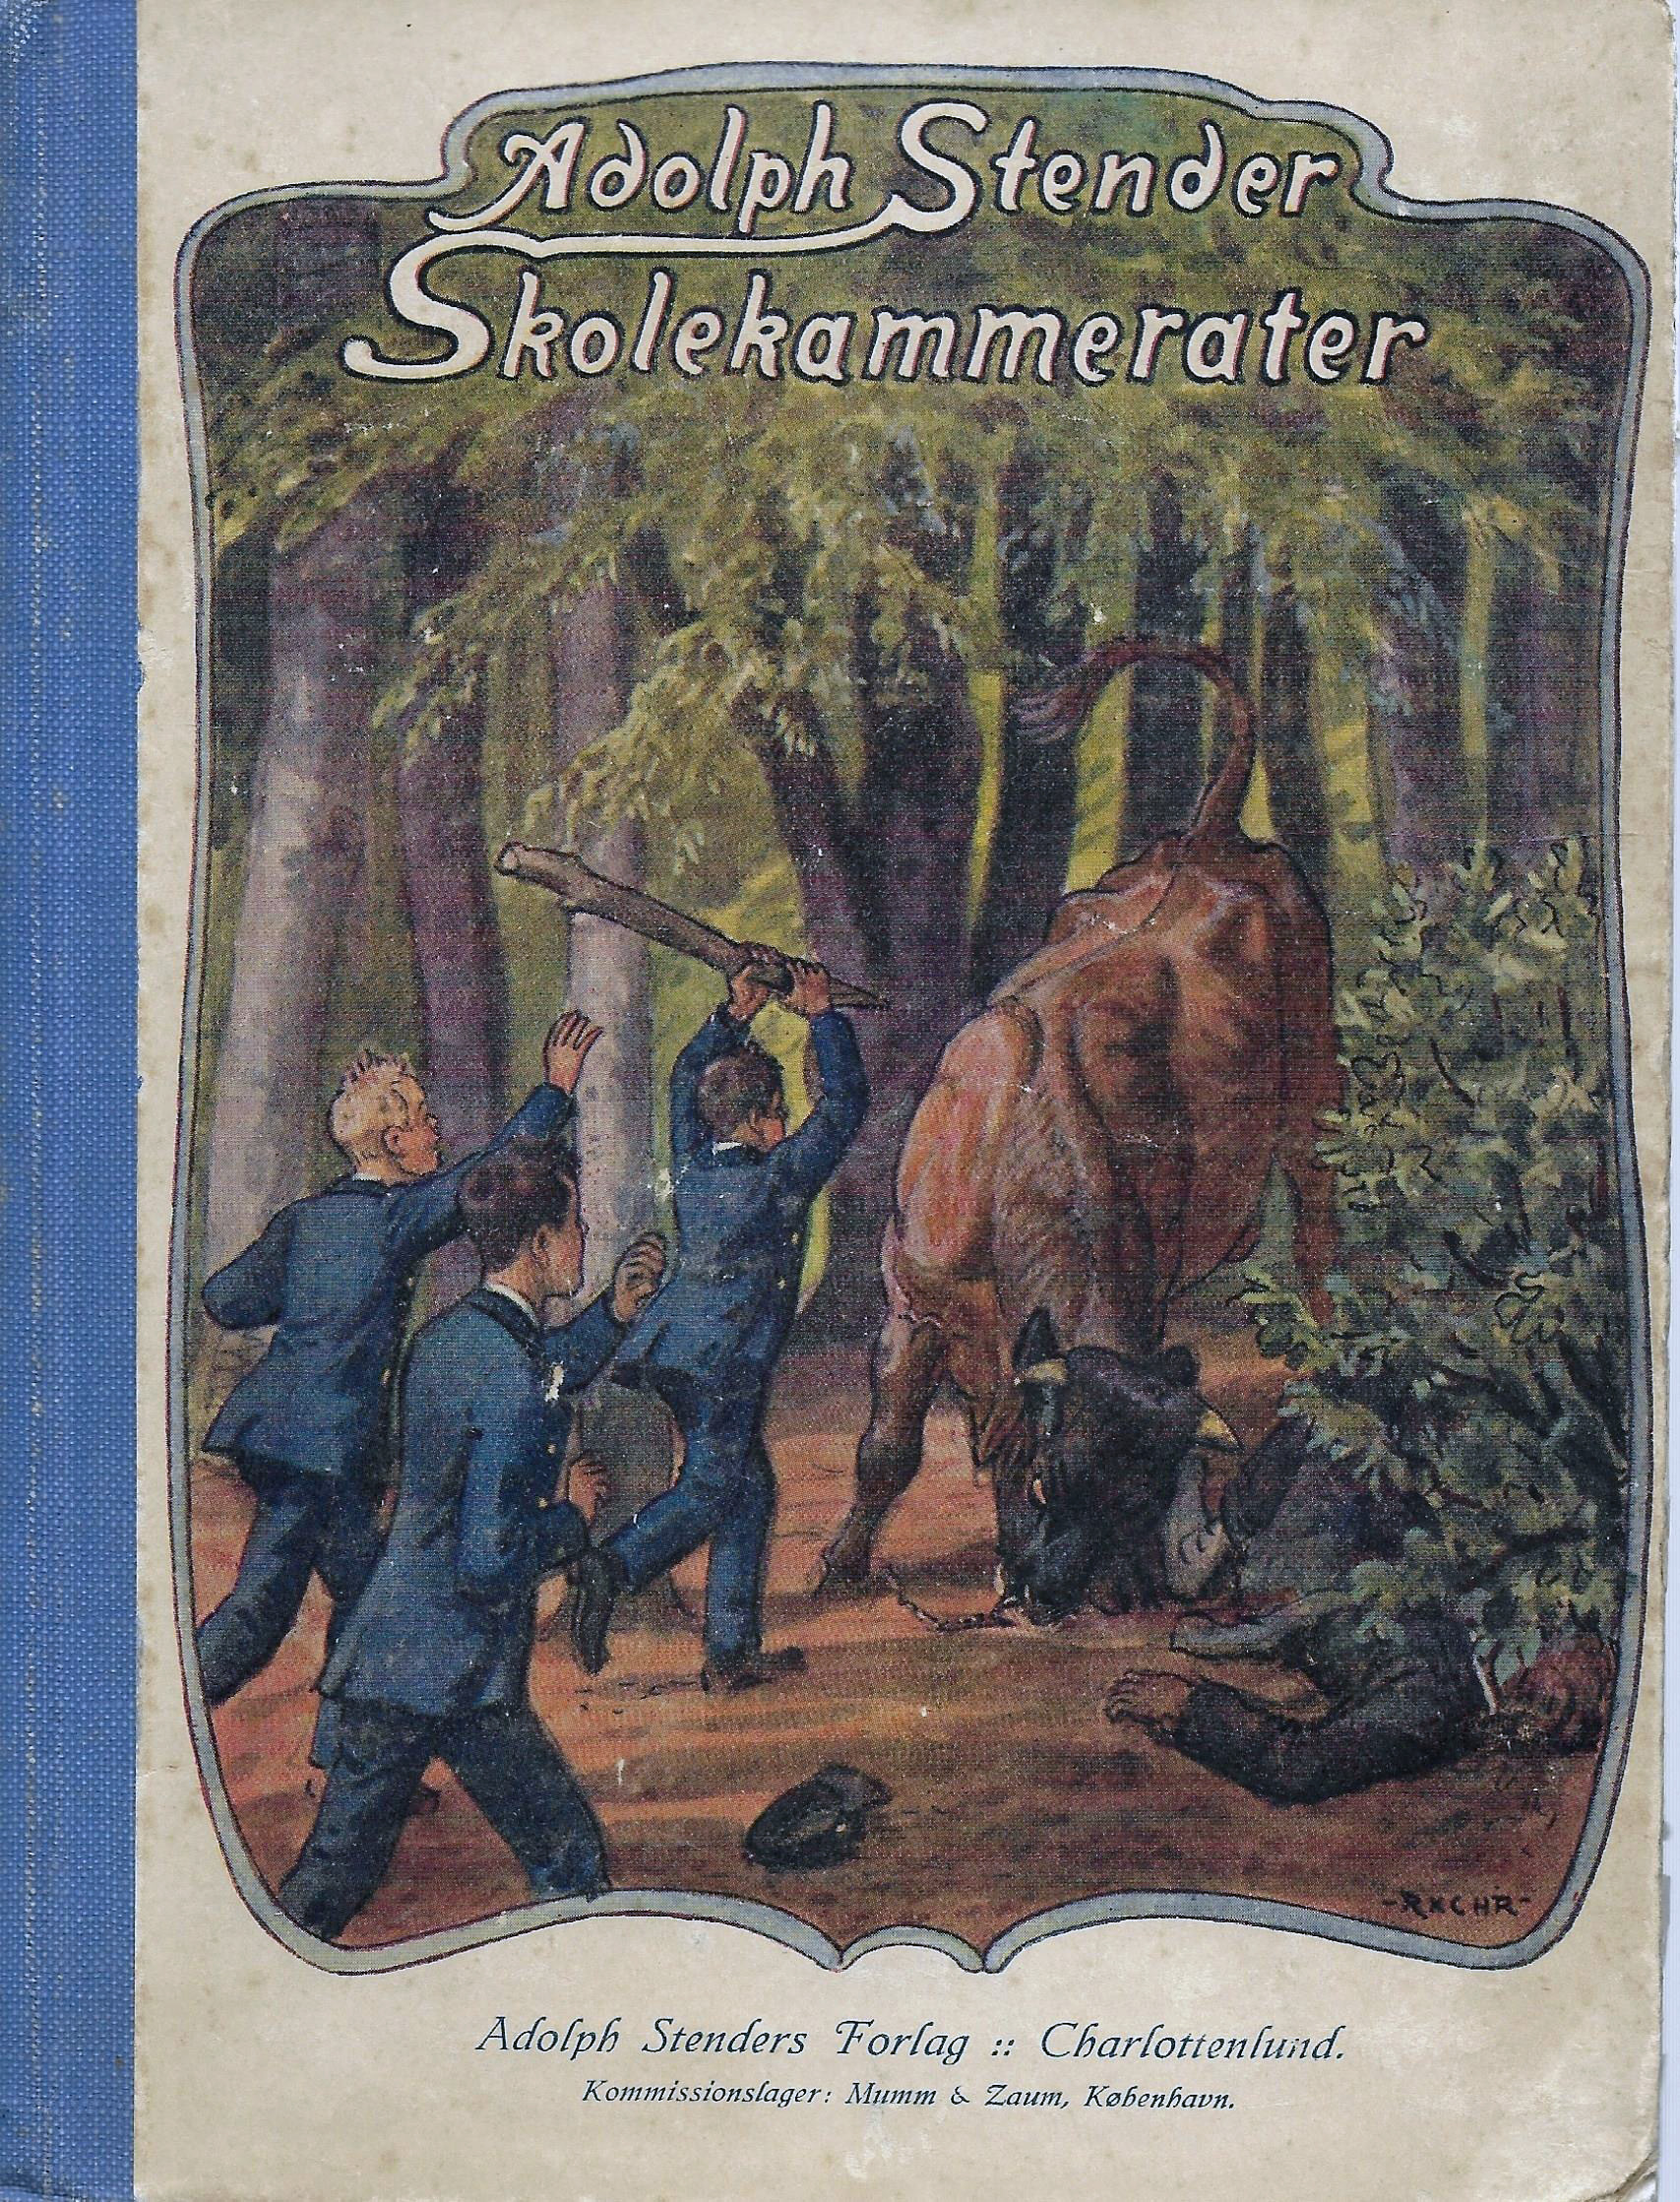 Skolekammerter - Adolph Stender 1918